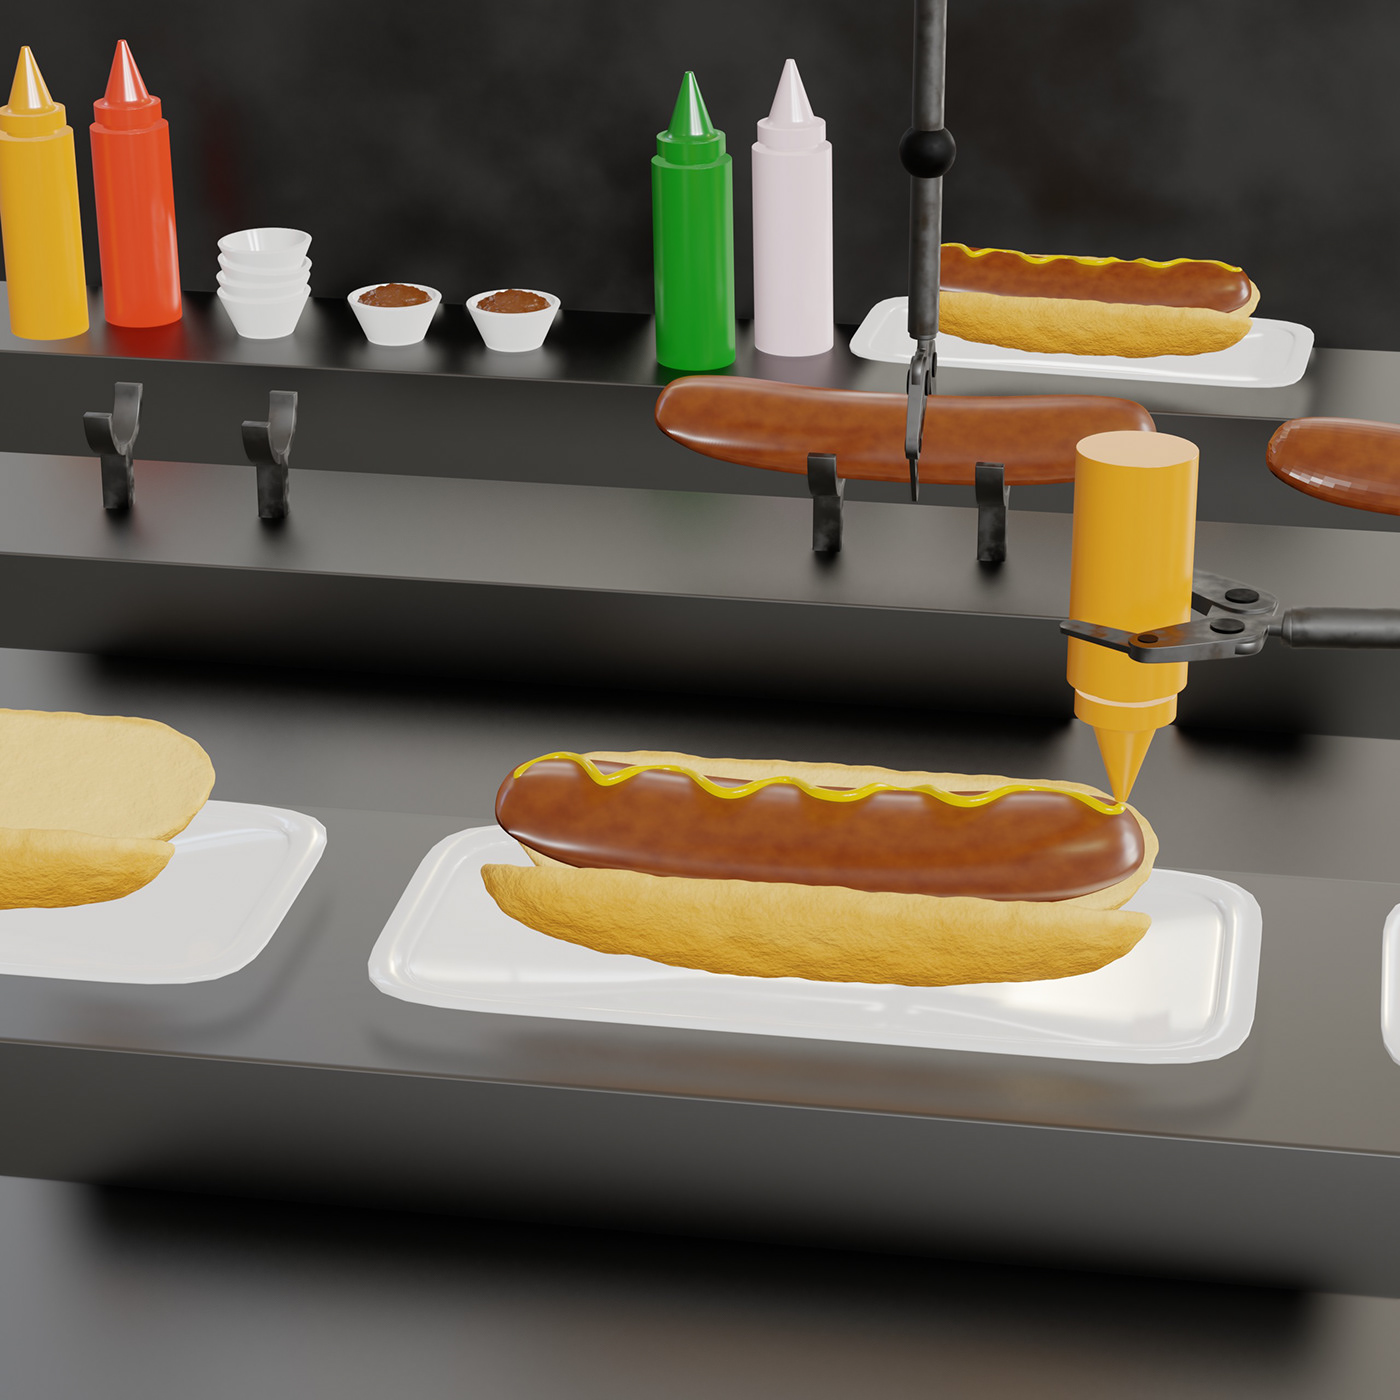 blender 3drender 3dmodeling animation  blendercycles Food  digitalart Noai ILLUSTRATION  design